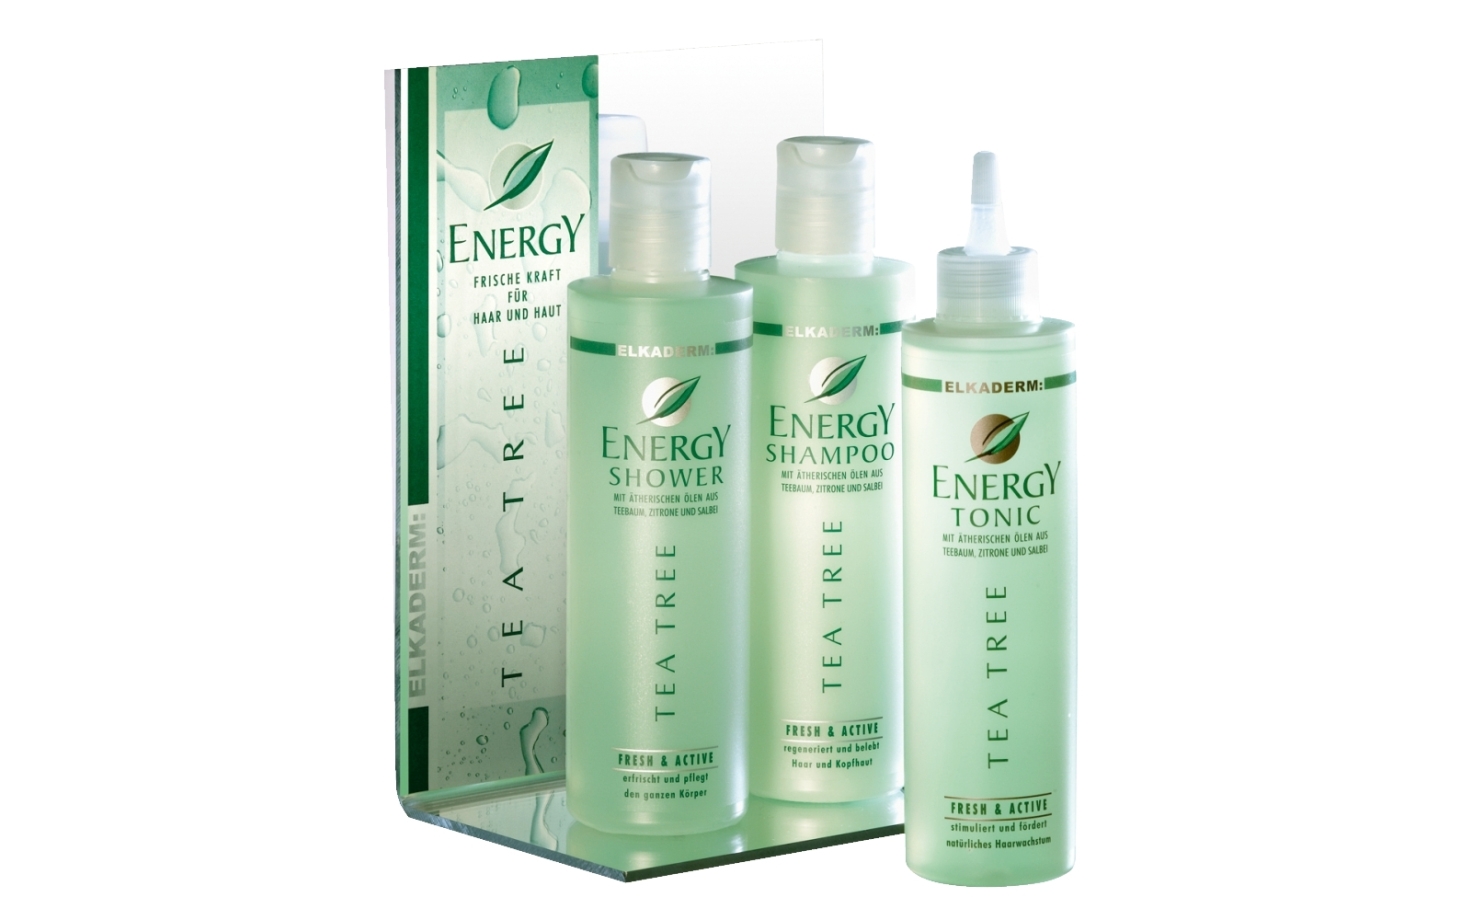 Elkaderm Energy Tea Tree Shampoo 250 ml